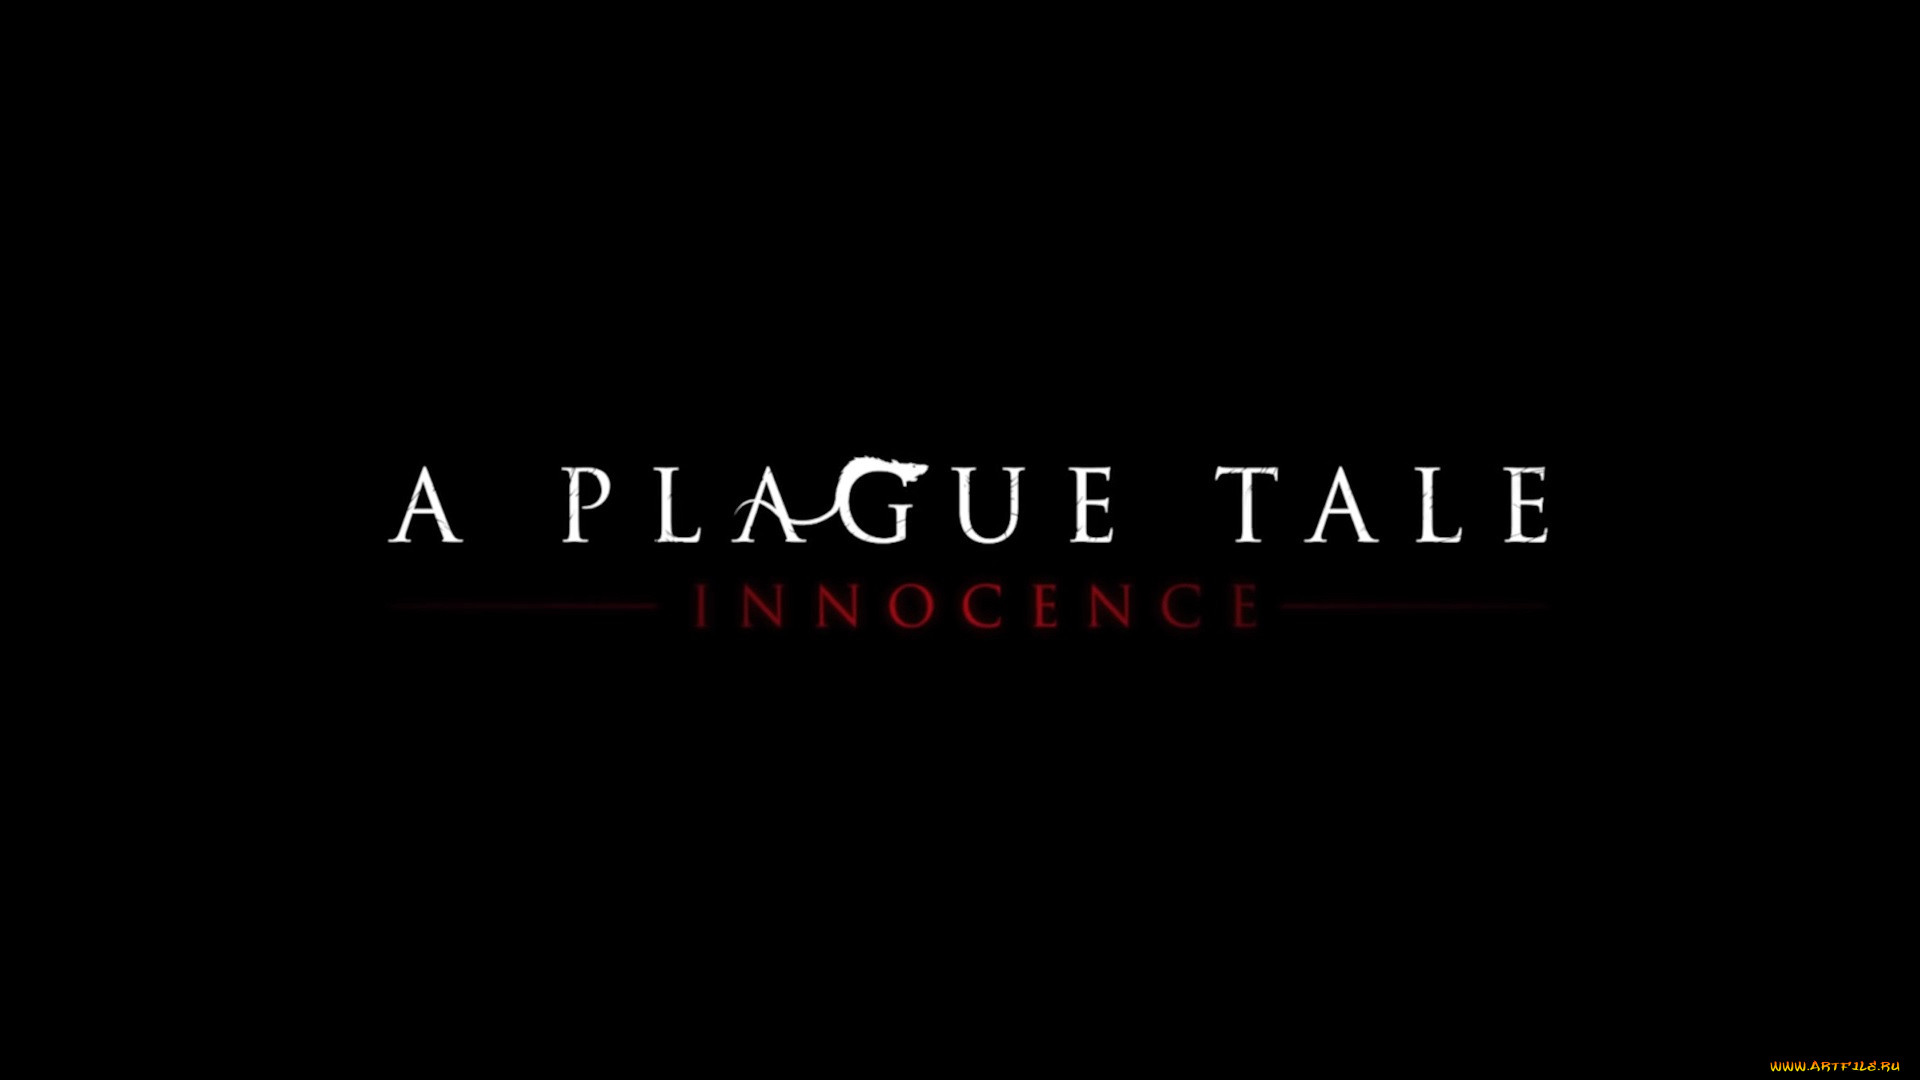  , a plague tale,  innocence, , , 